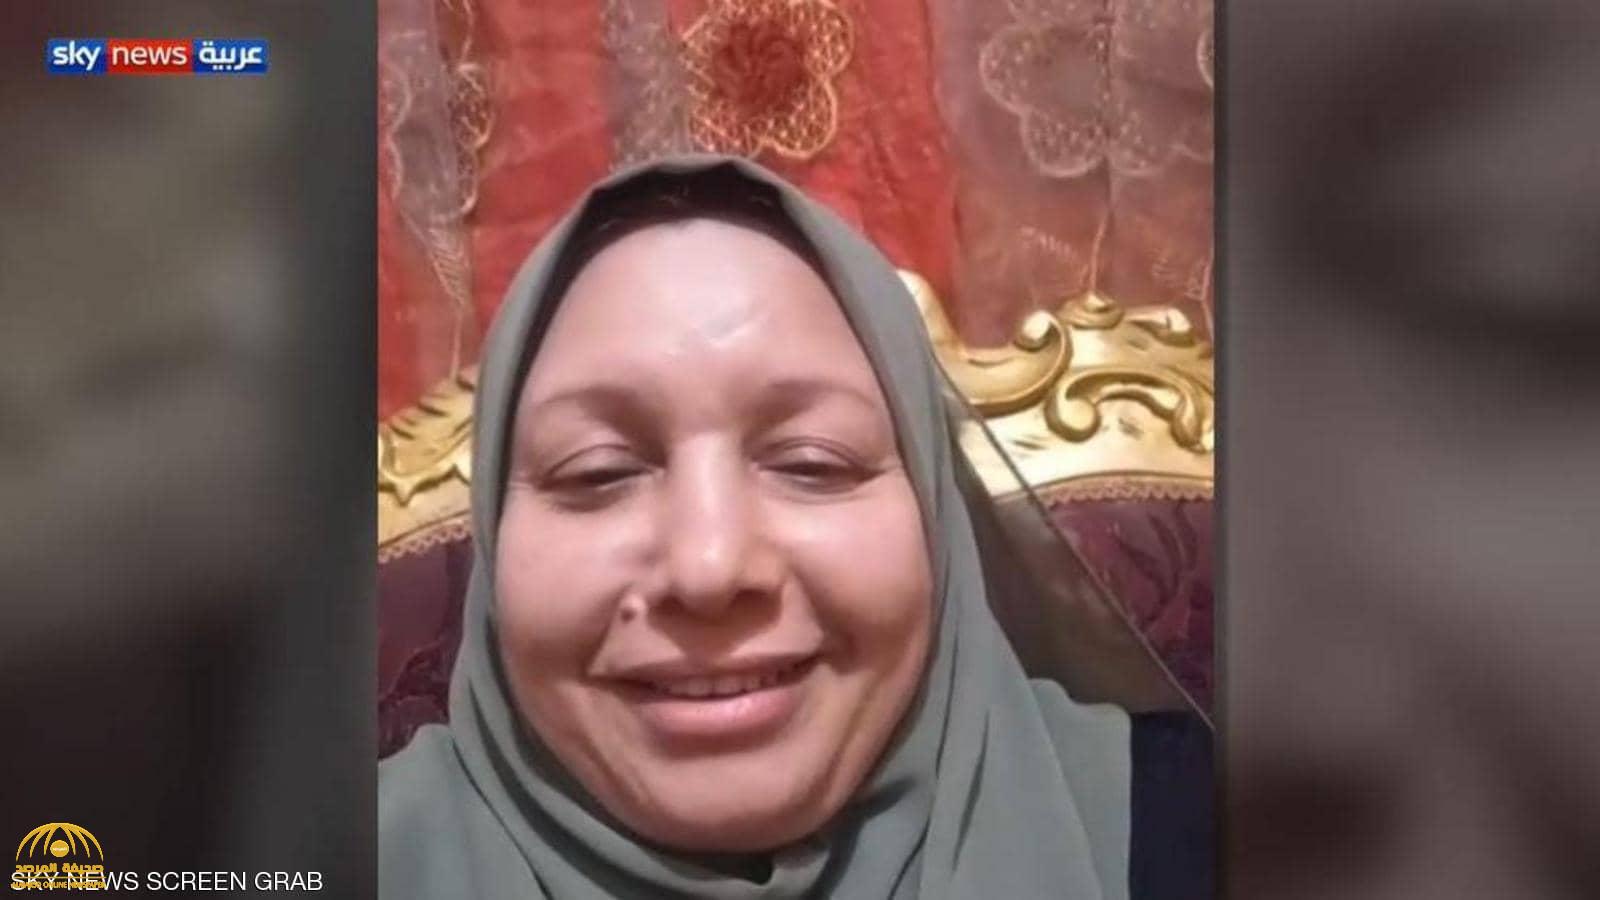 بعد تعافيها من كورونا.. بالفيديو: سيدة مصرية تروي قصة شفائها المؤثرة وتغلبها على الفيروس